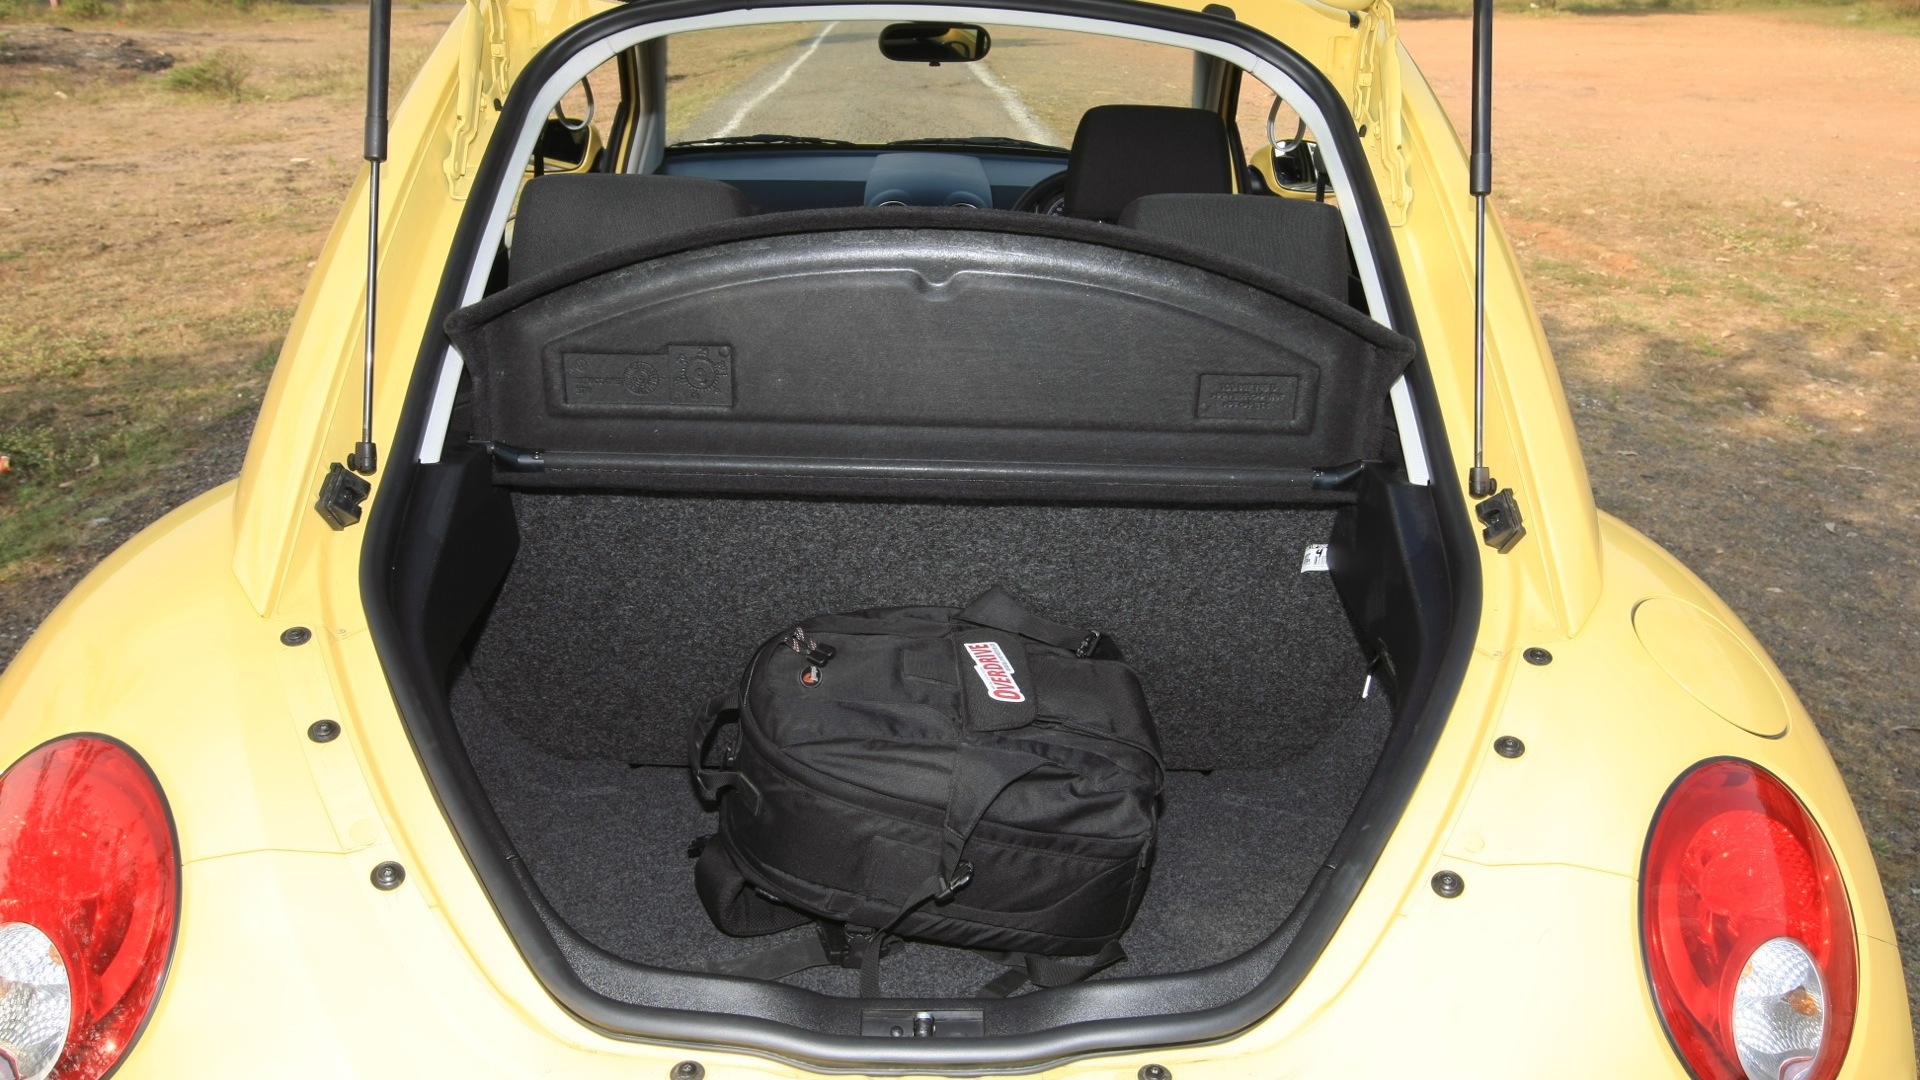 Volkswagen-Beetle-2013-STD-Interior